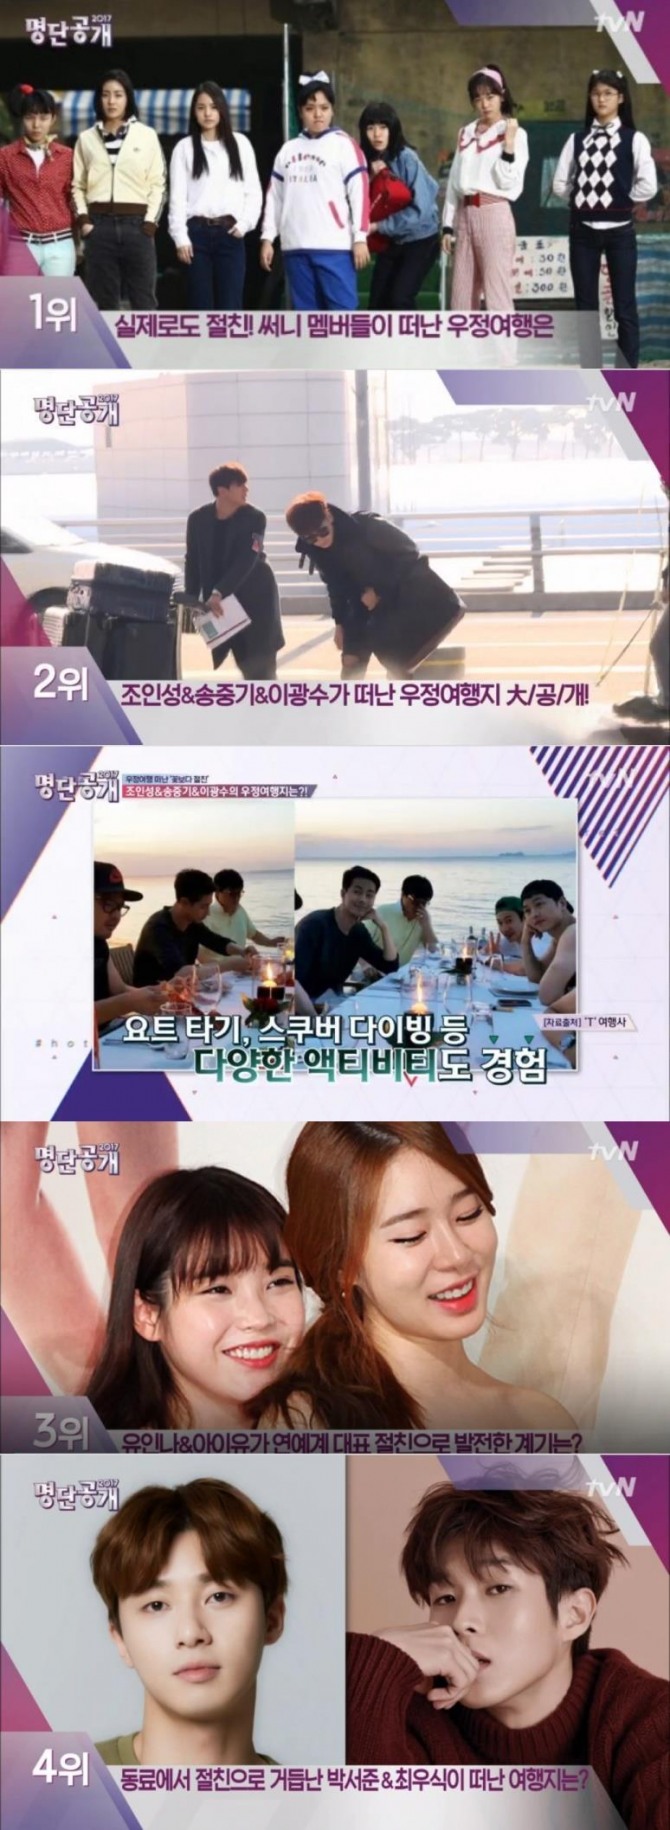 27일 방송된 tvN '명단공개'에서는 여행을 함께 하며 우정을 나눈 절친 스타 순위가 발표된 가운데 강소라, 민효린, 심은경 등 영화 '써니'의 7공주가 1위로 꼽혔다./사진=tvN 방송 캡처 